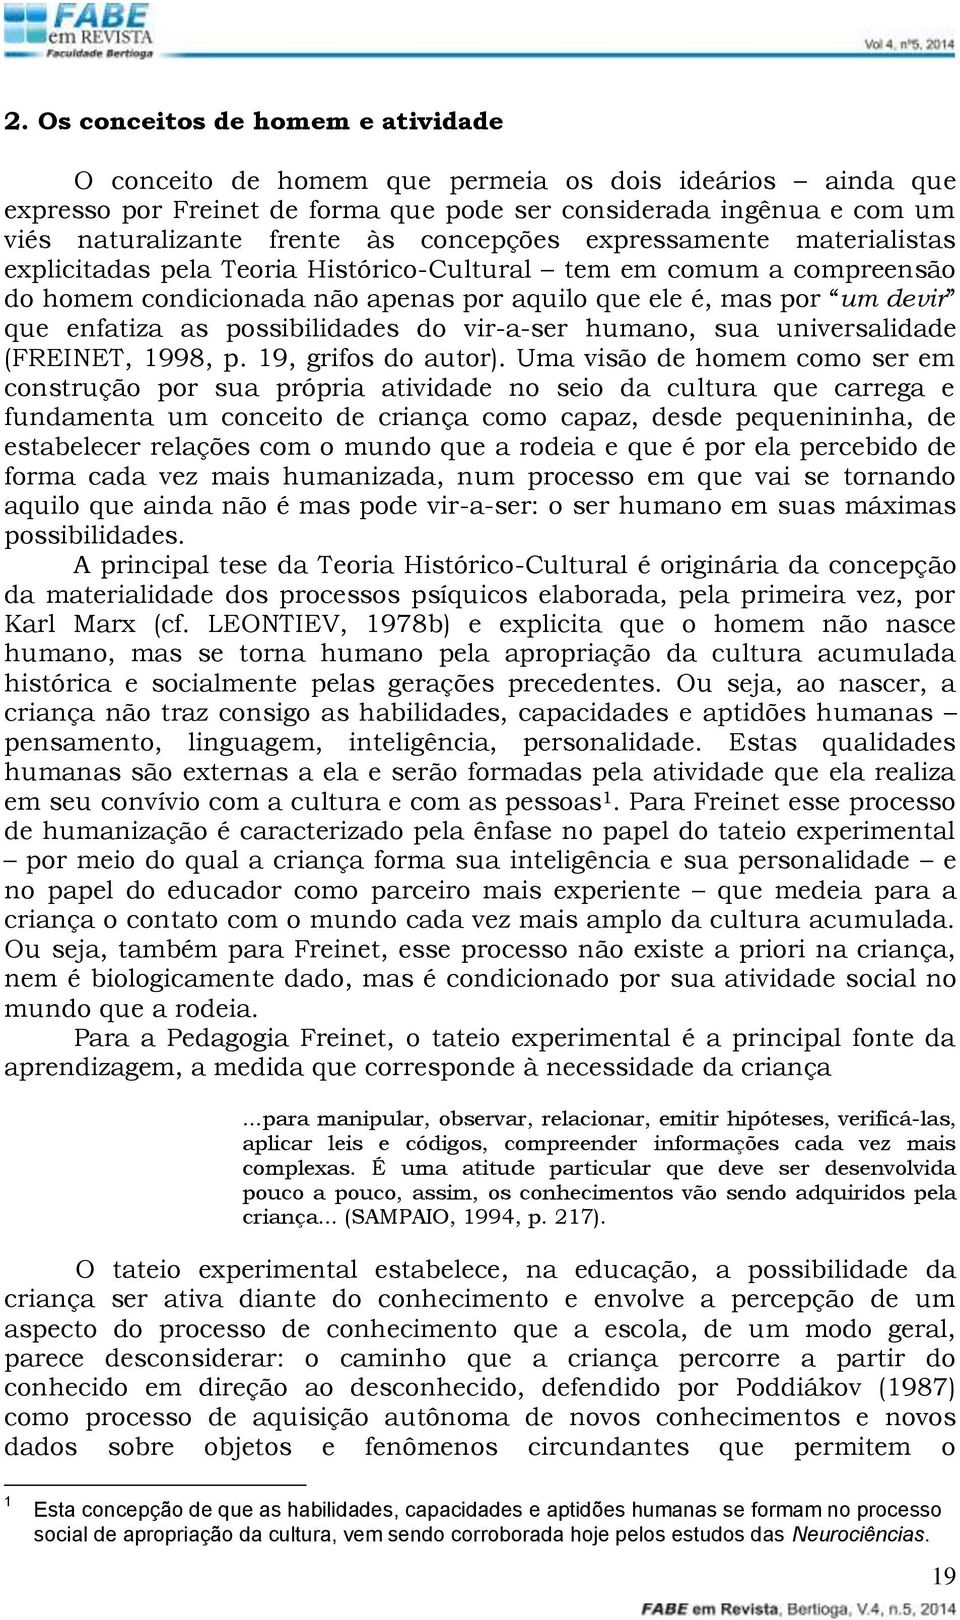 possibilidades do vir-a-ser humano, sua universalidade (FREINET, 1998, p. 19, grifos do autor).